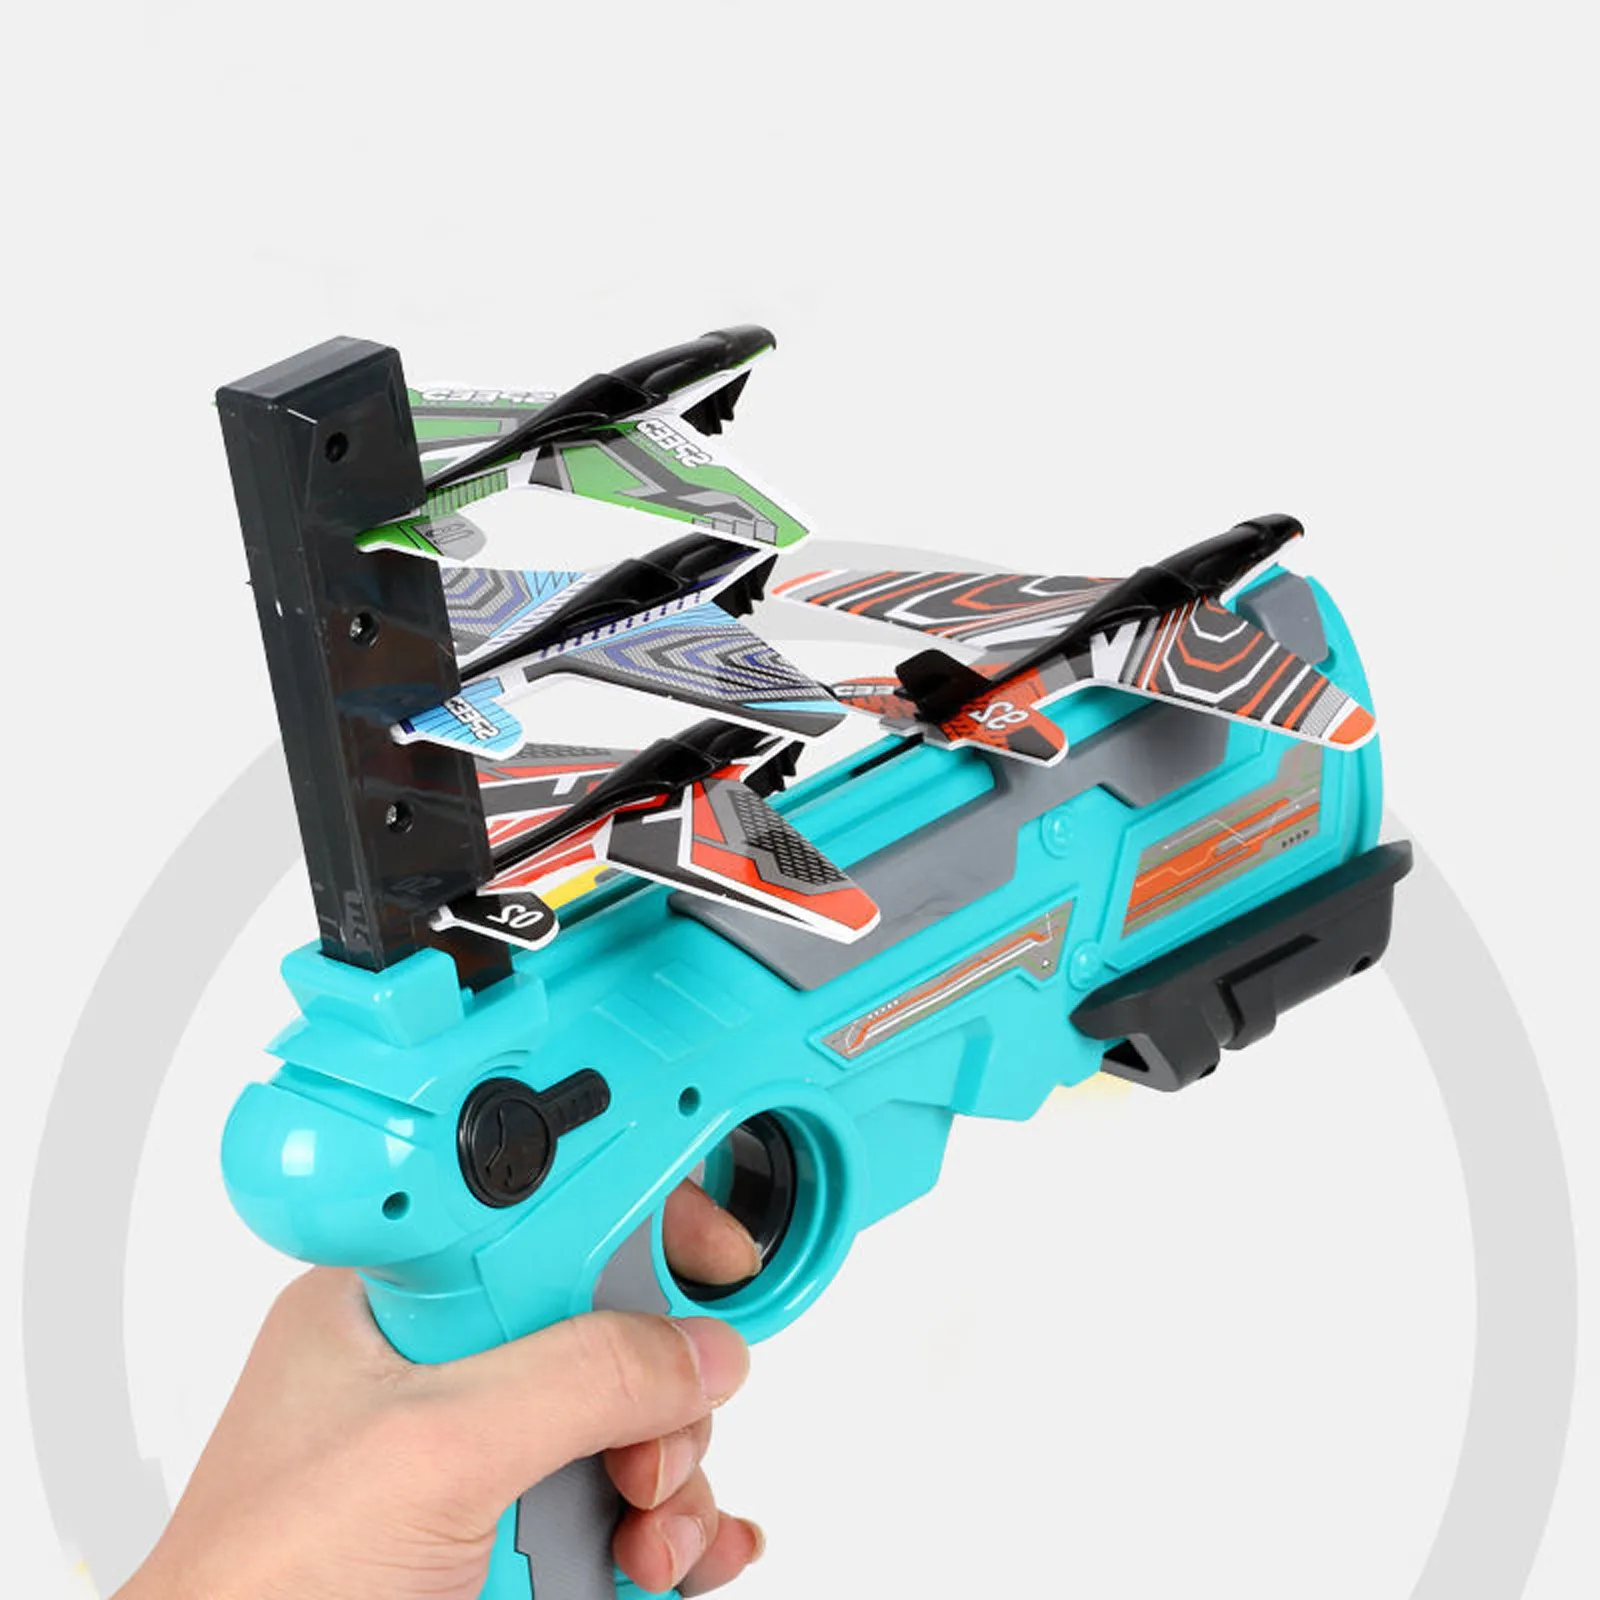 Нажатием одной кнопки выброса Пена Самолет съемки игра игрушка Рогатка самолета игрушечный пистолет пузырь самолета пистолет для приготовления пищи на воздухе детские игрушки